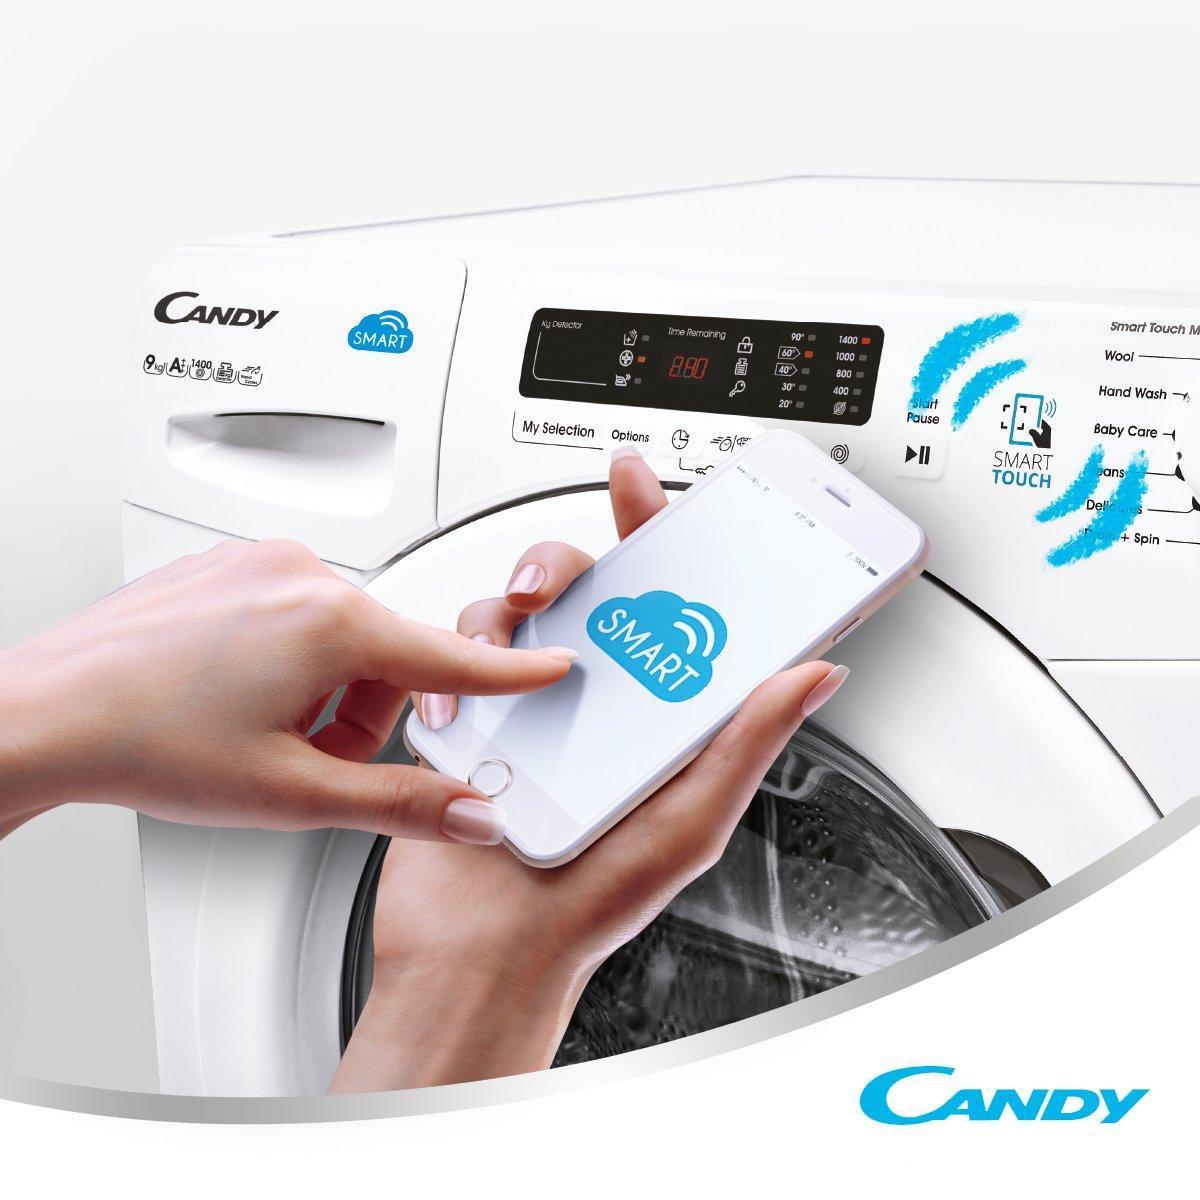 Máy giặt Candy có giá thành khá rẻ so với các hãng máy giặt khác